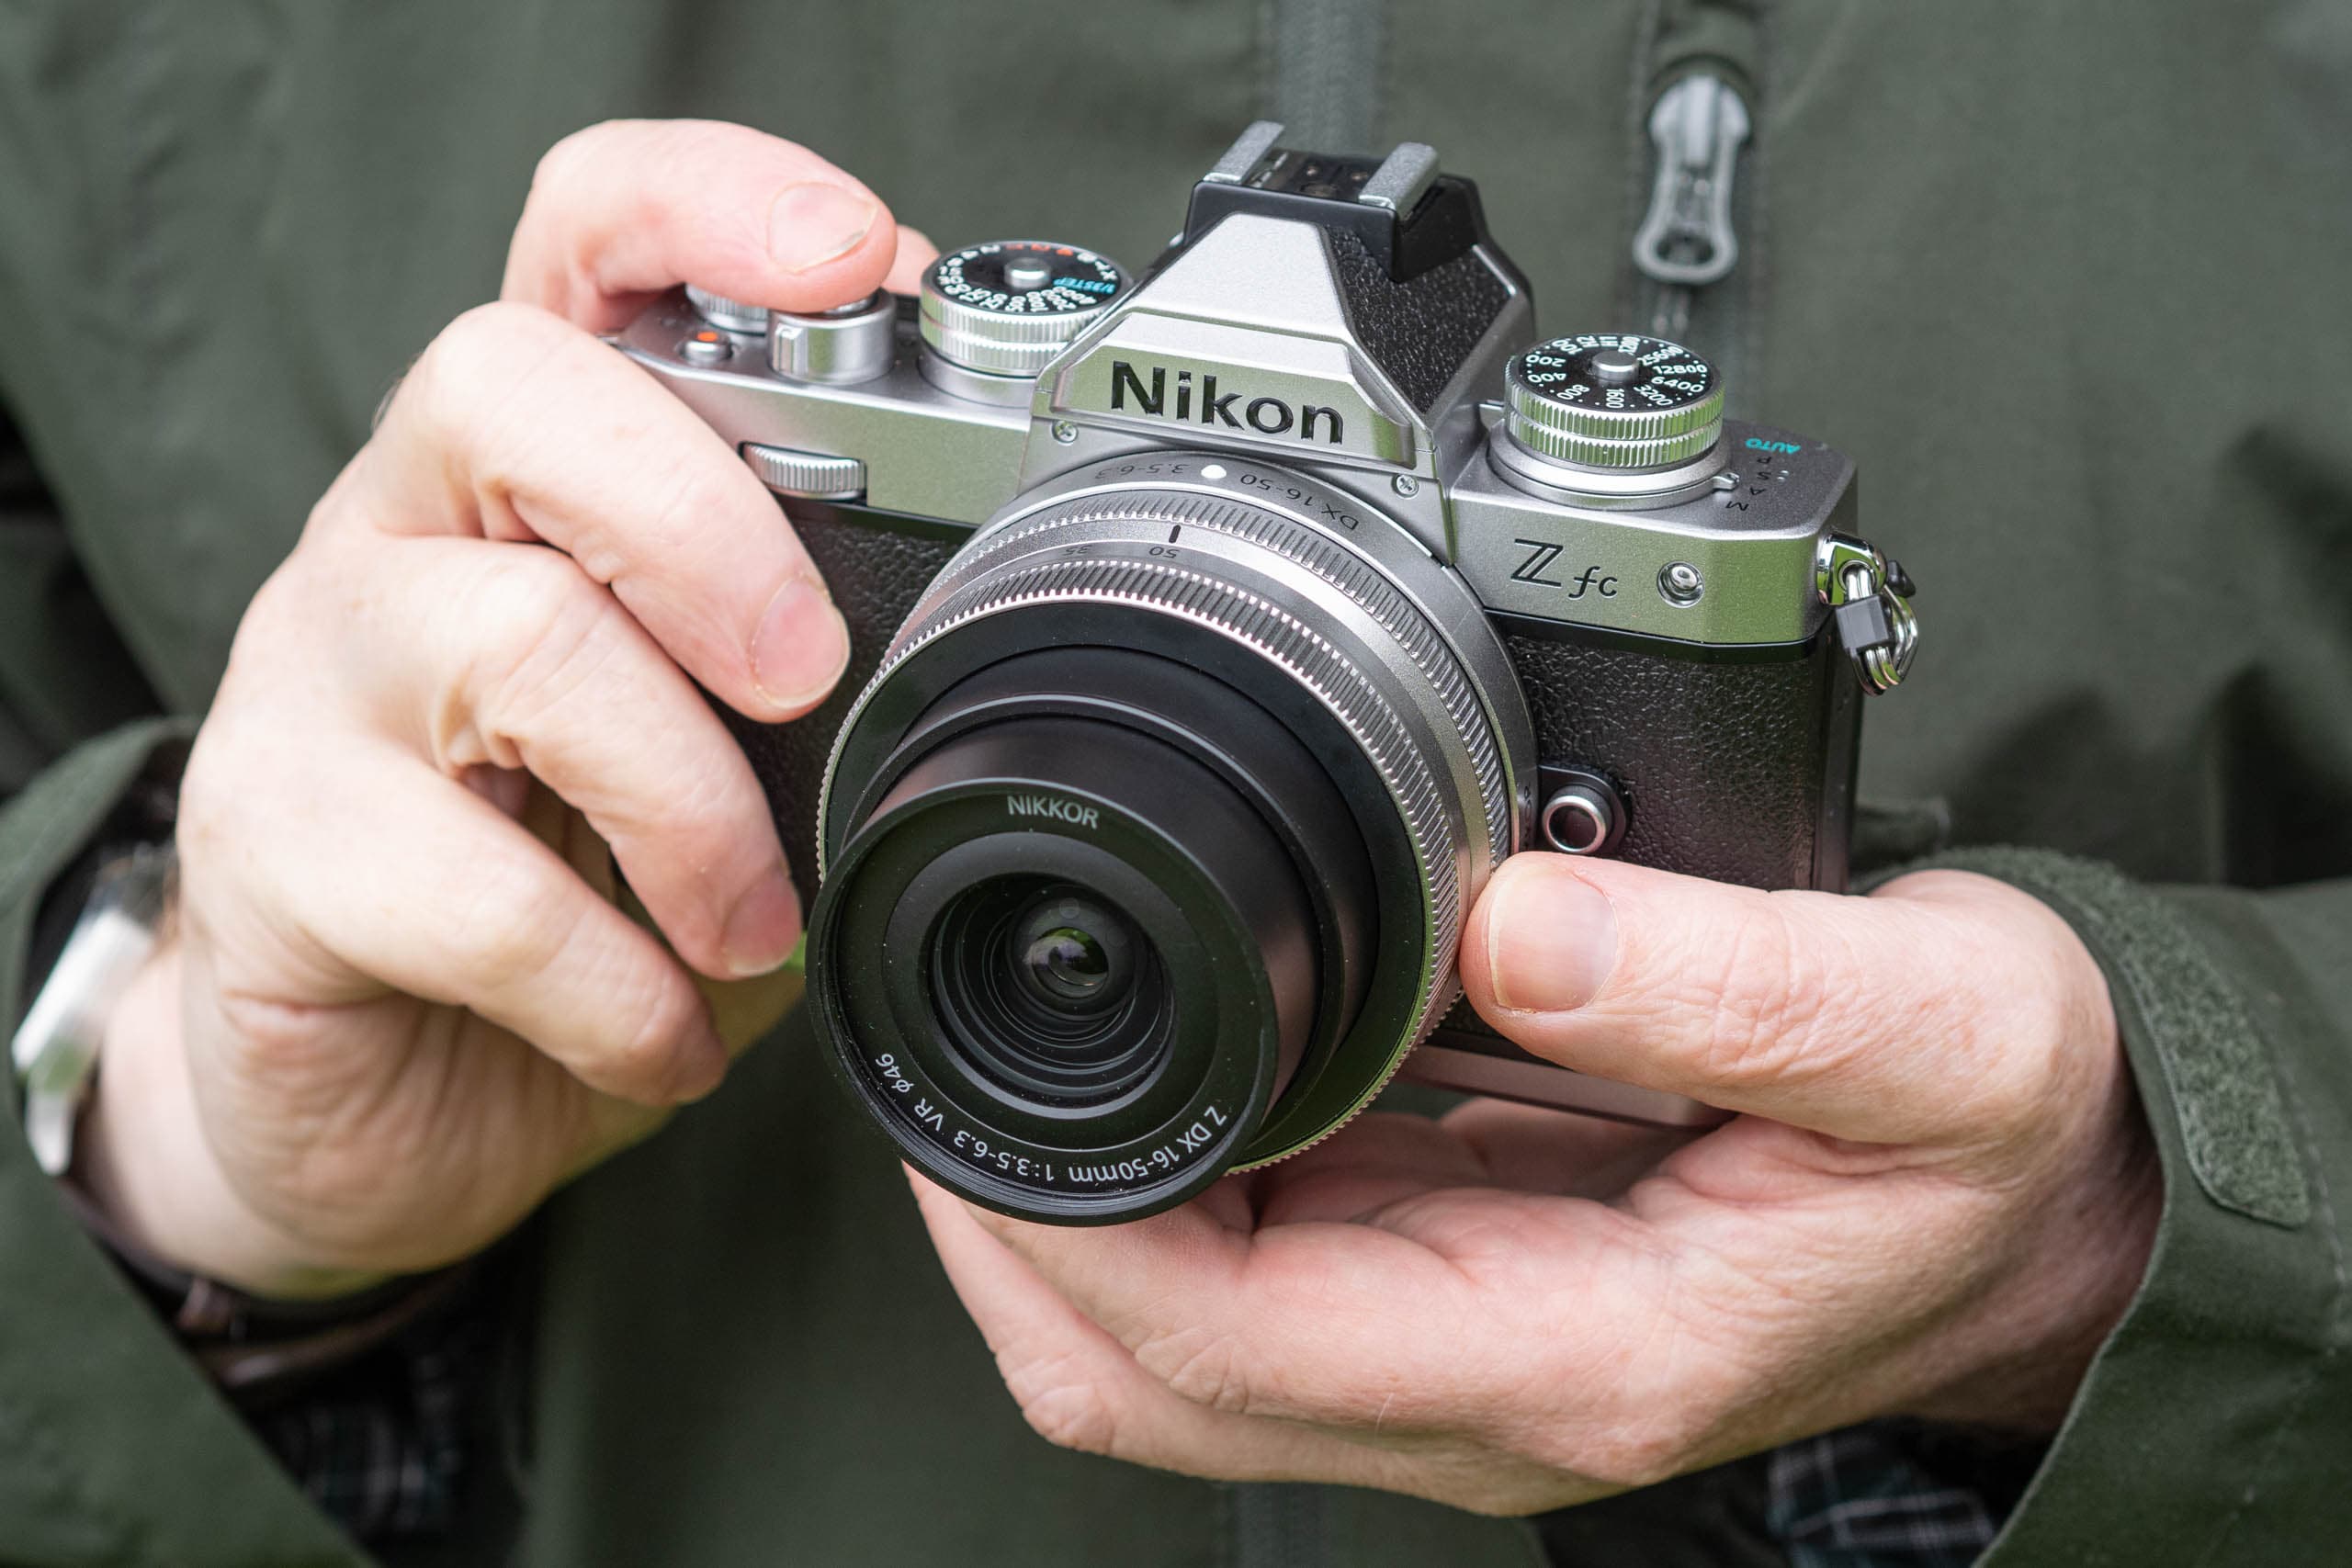 Nikon Z fc Review - Camera Jabber